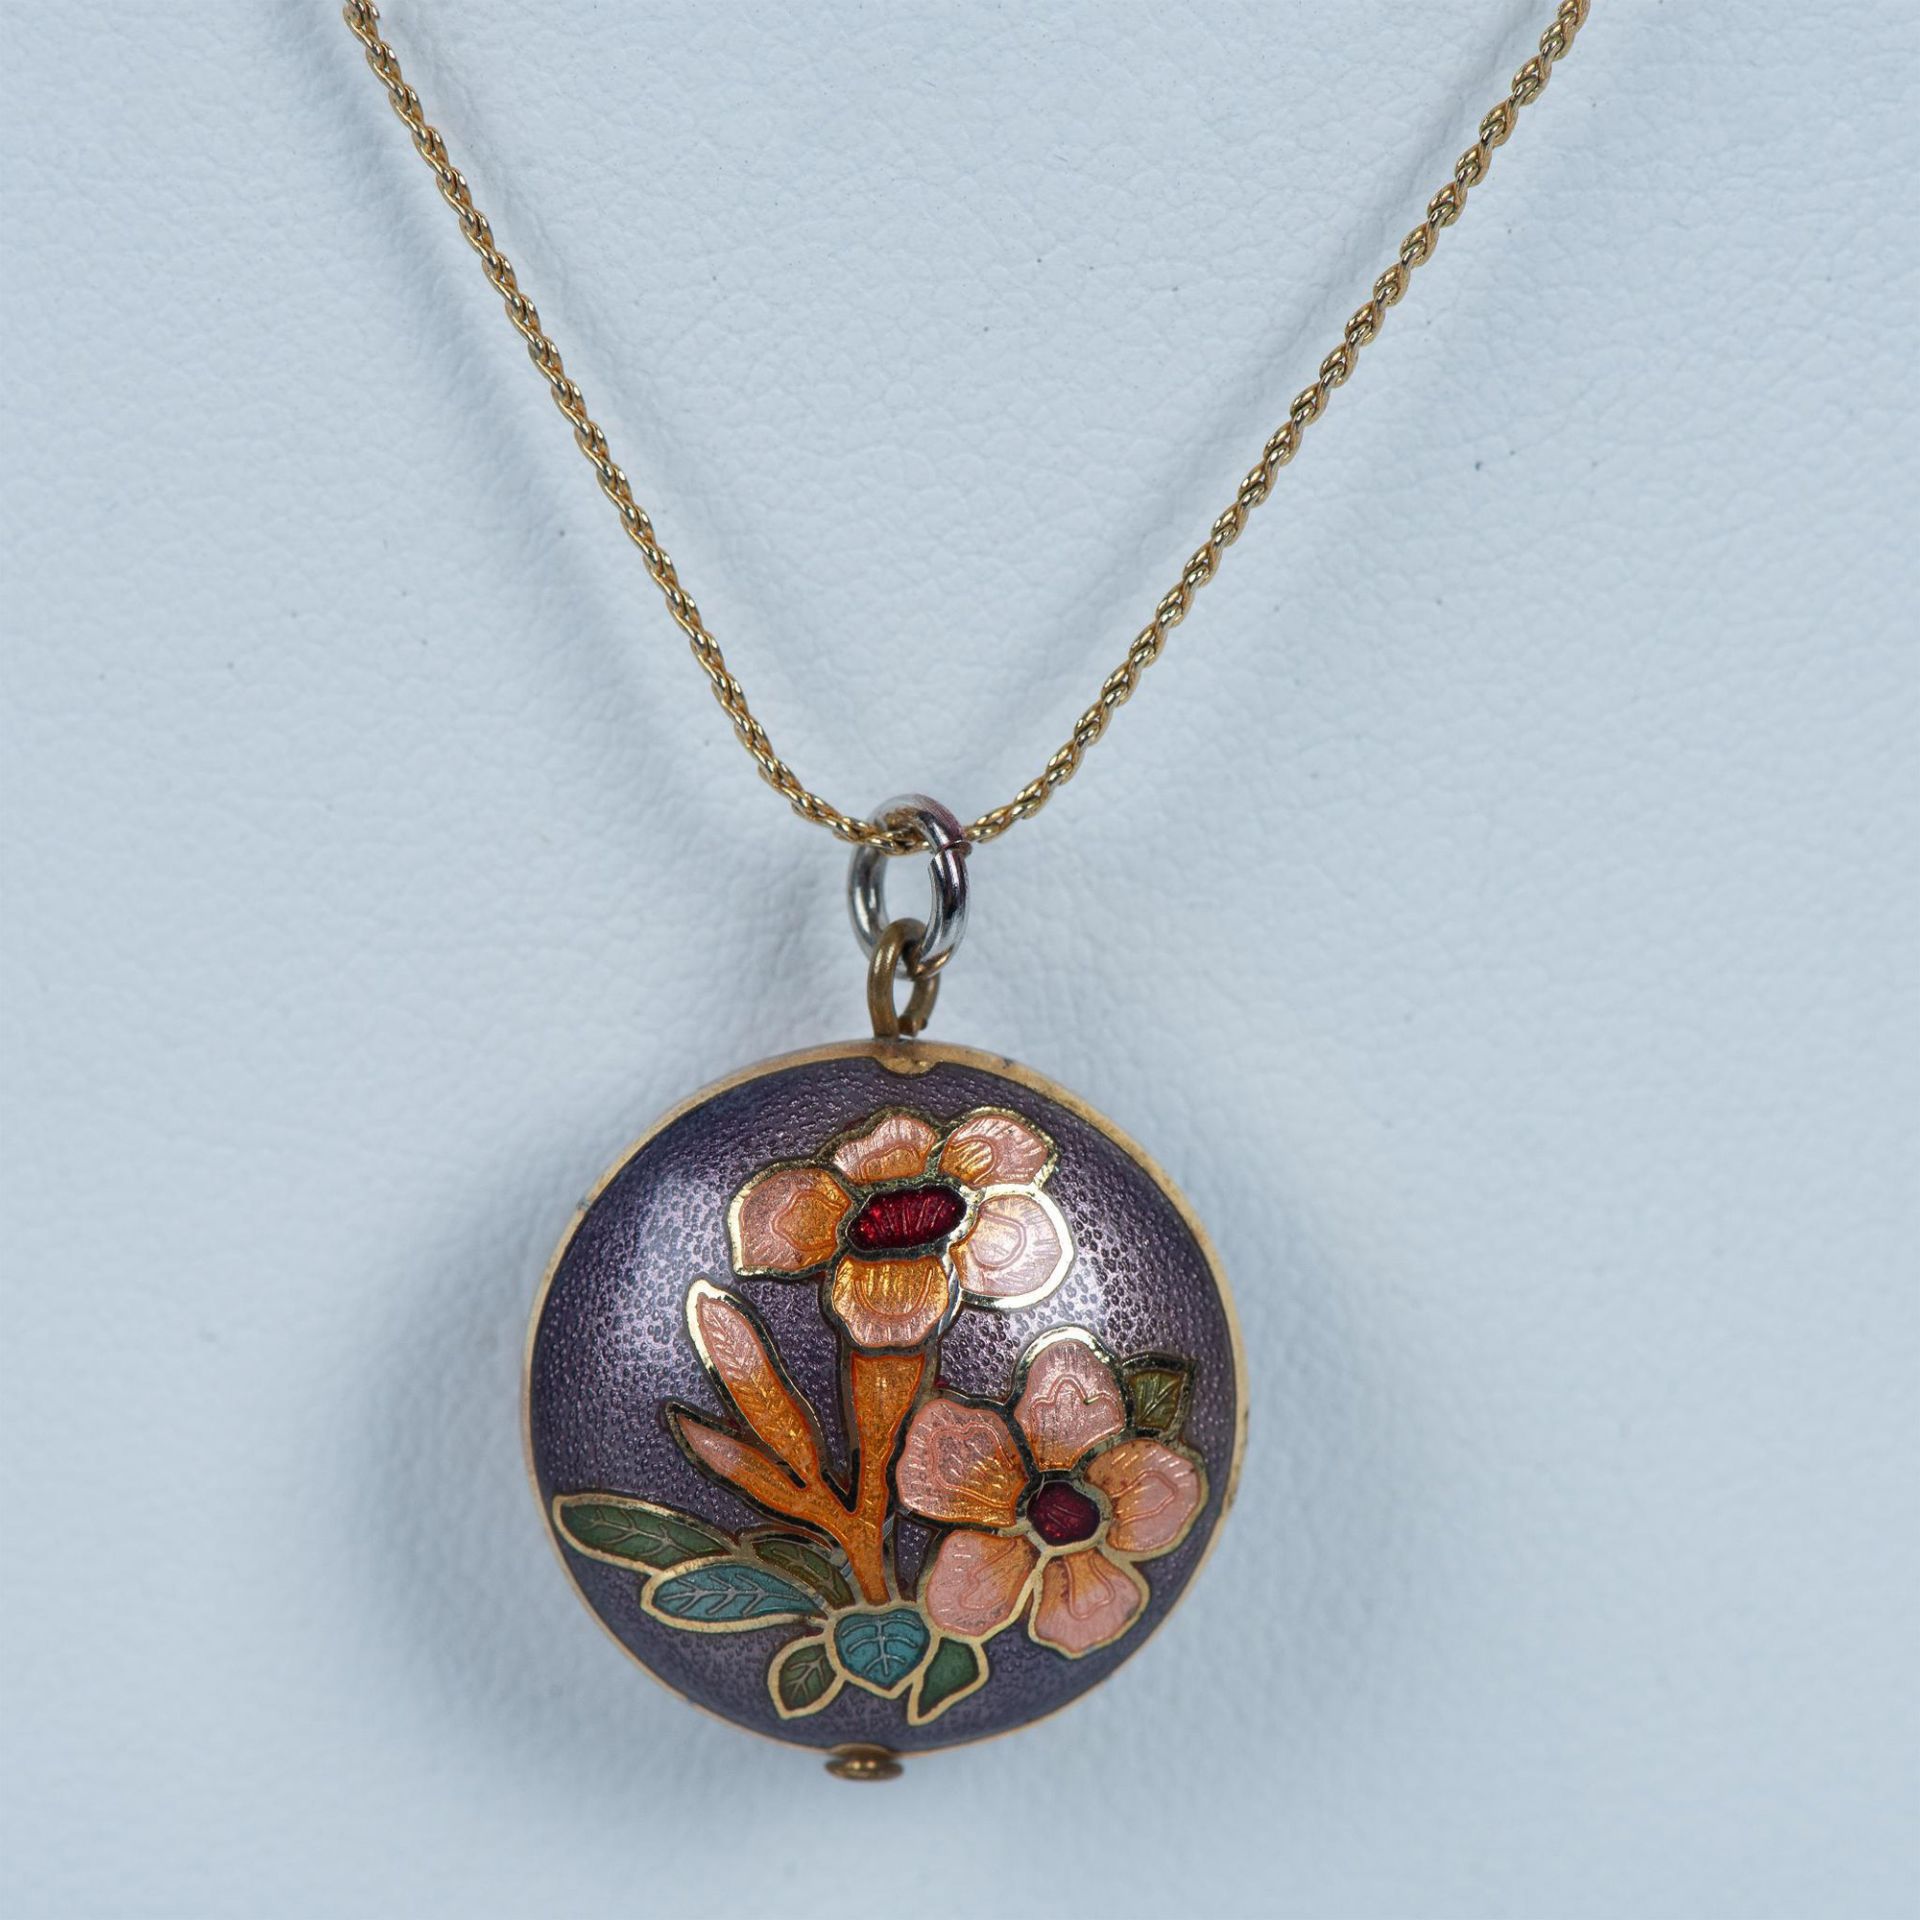 Vintage Delicate Cloisonne Flower Necklace - Image 2 of 4